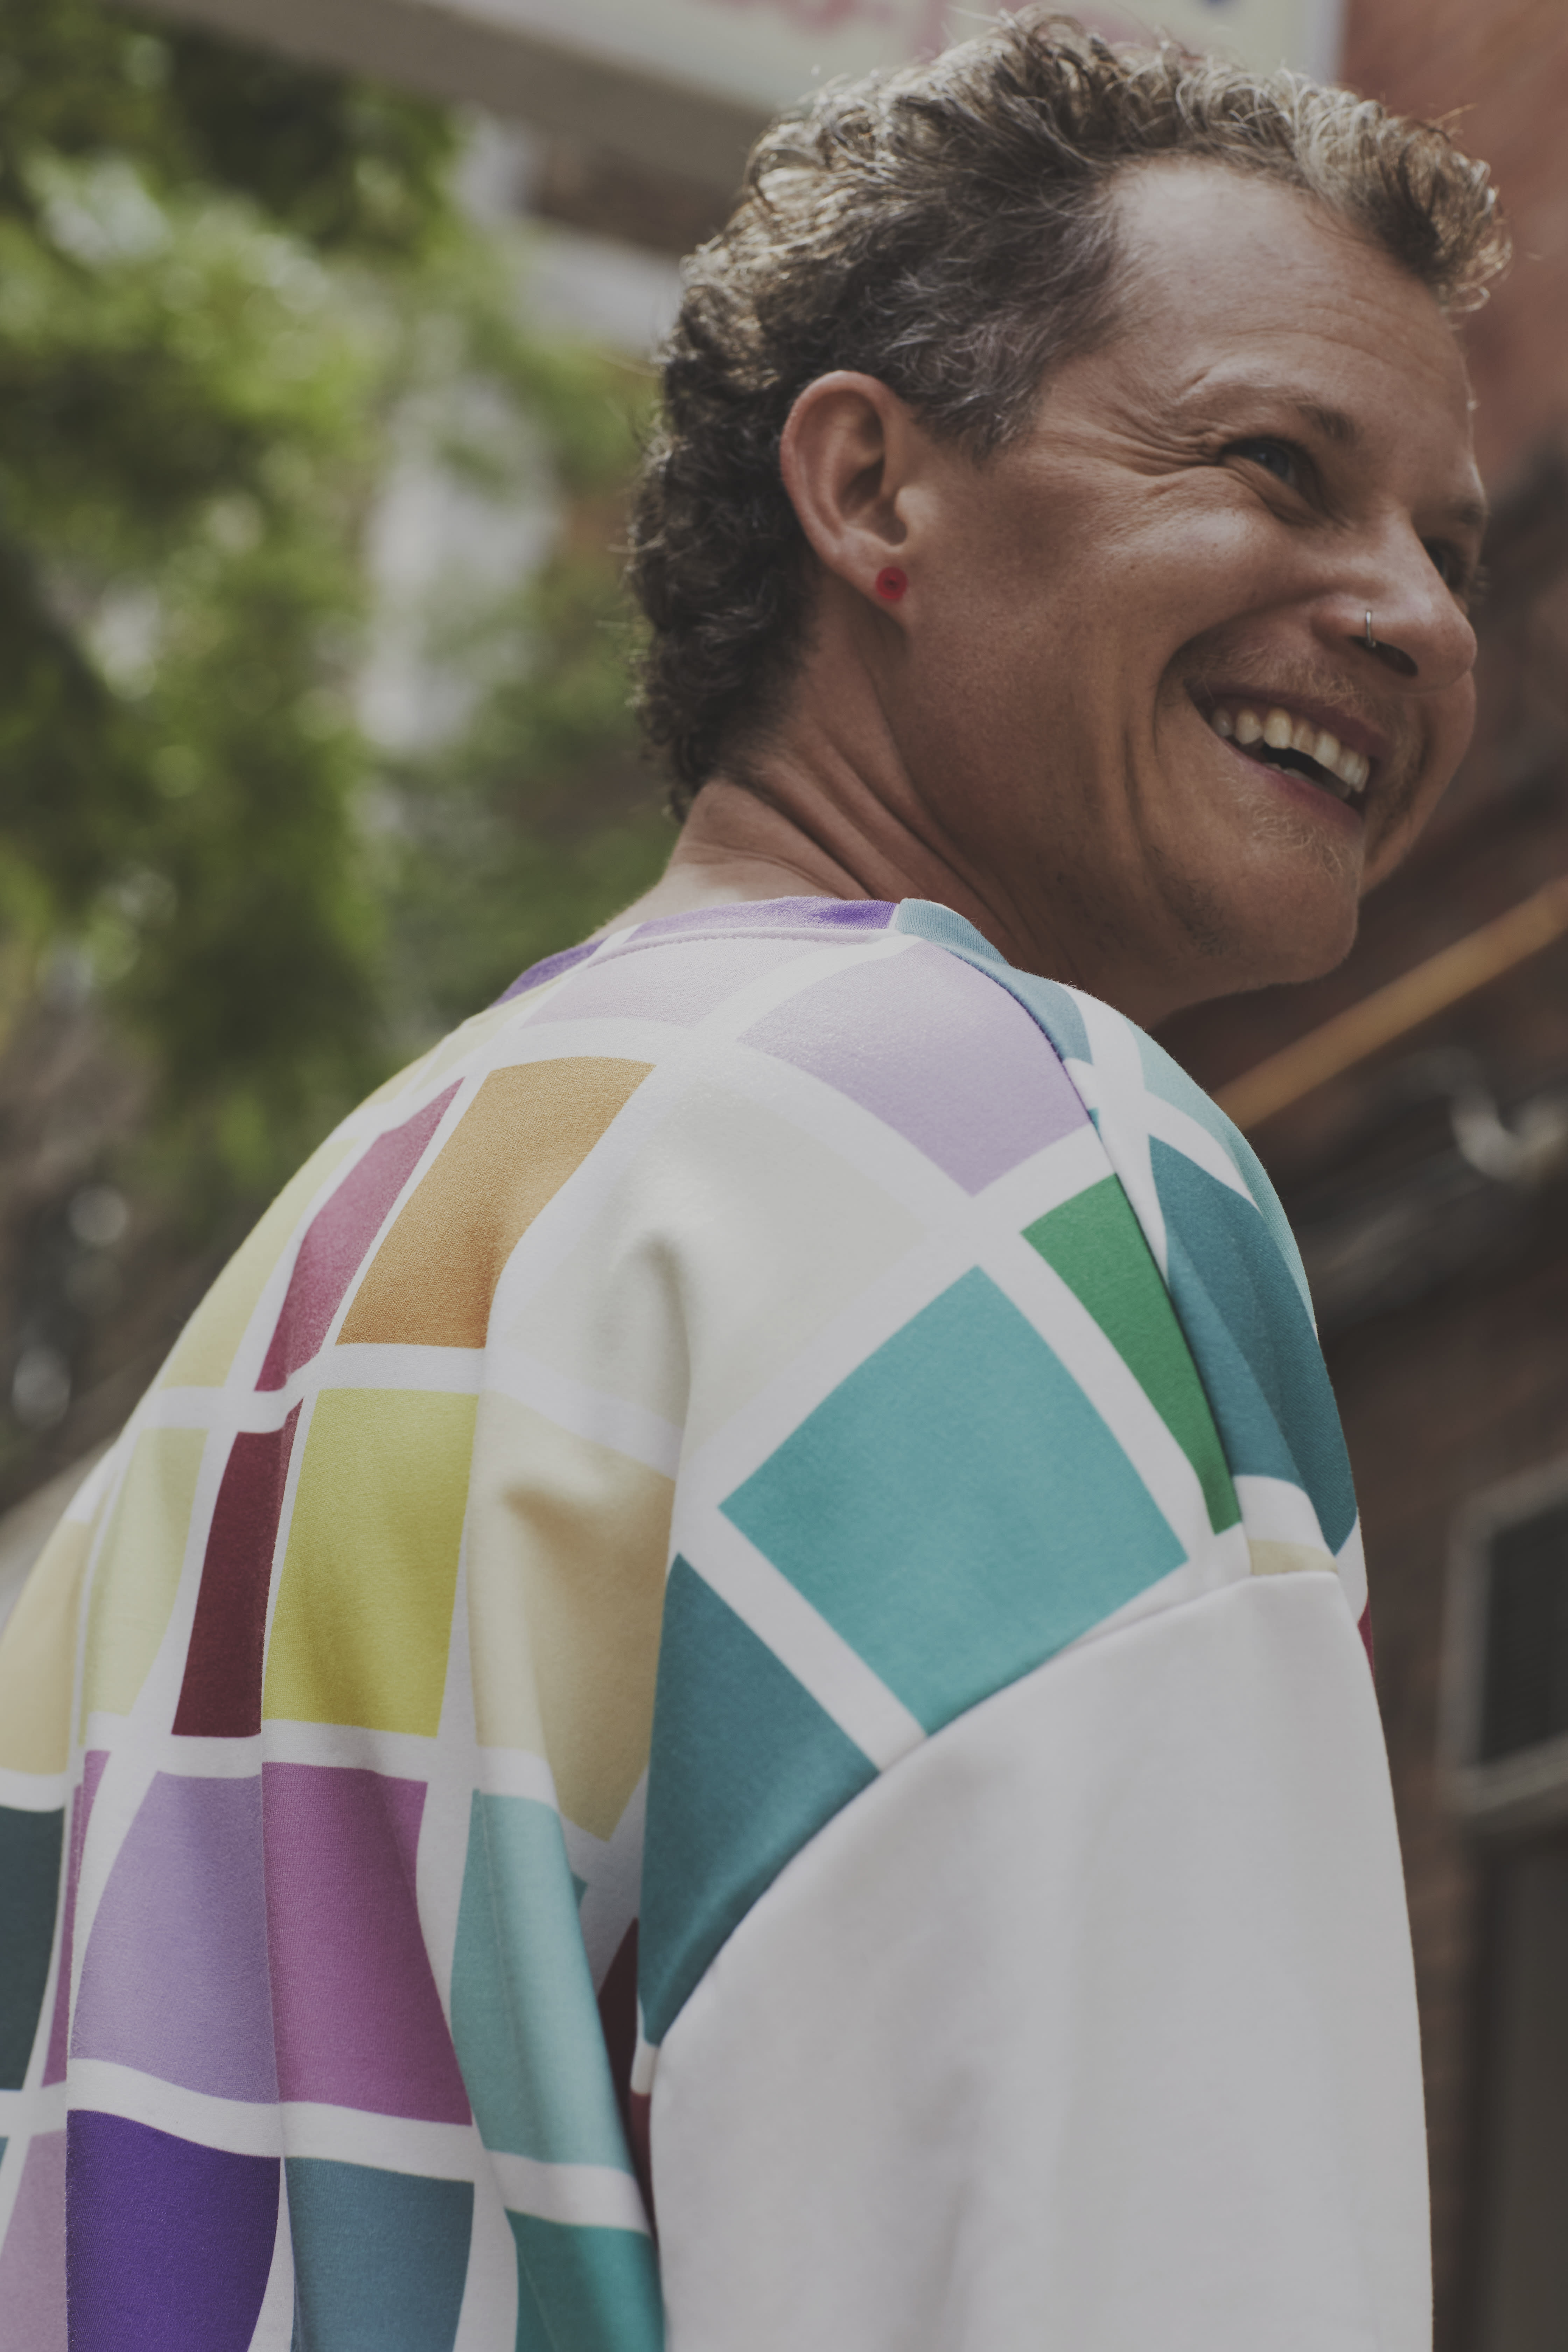 Tyler Lumb wearing a rainbow sweatshirt